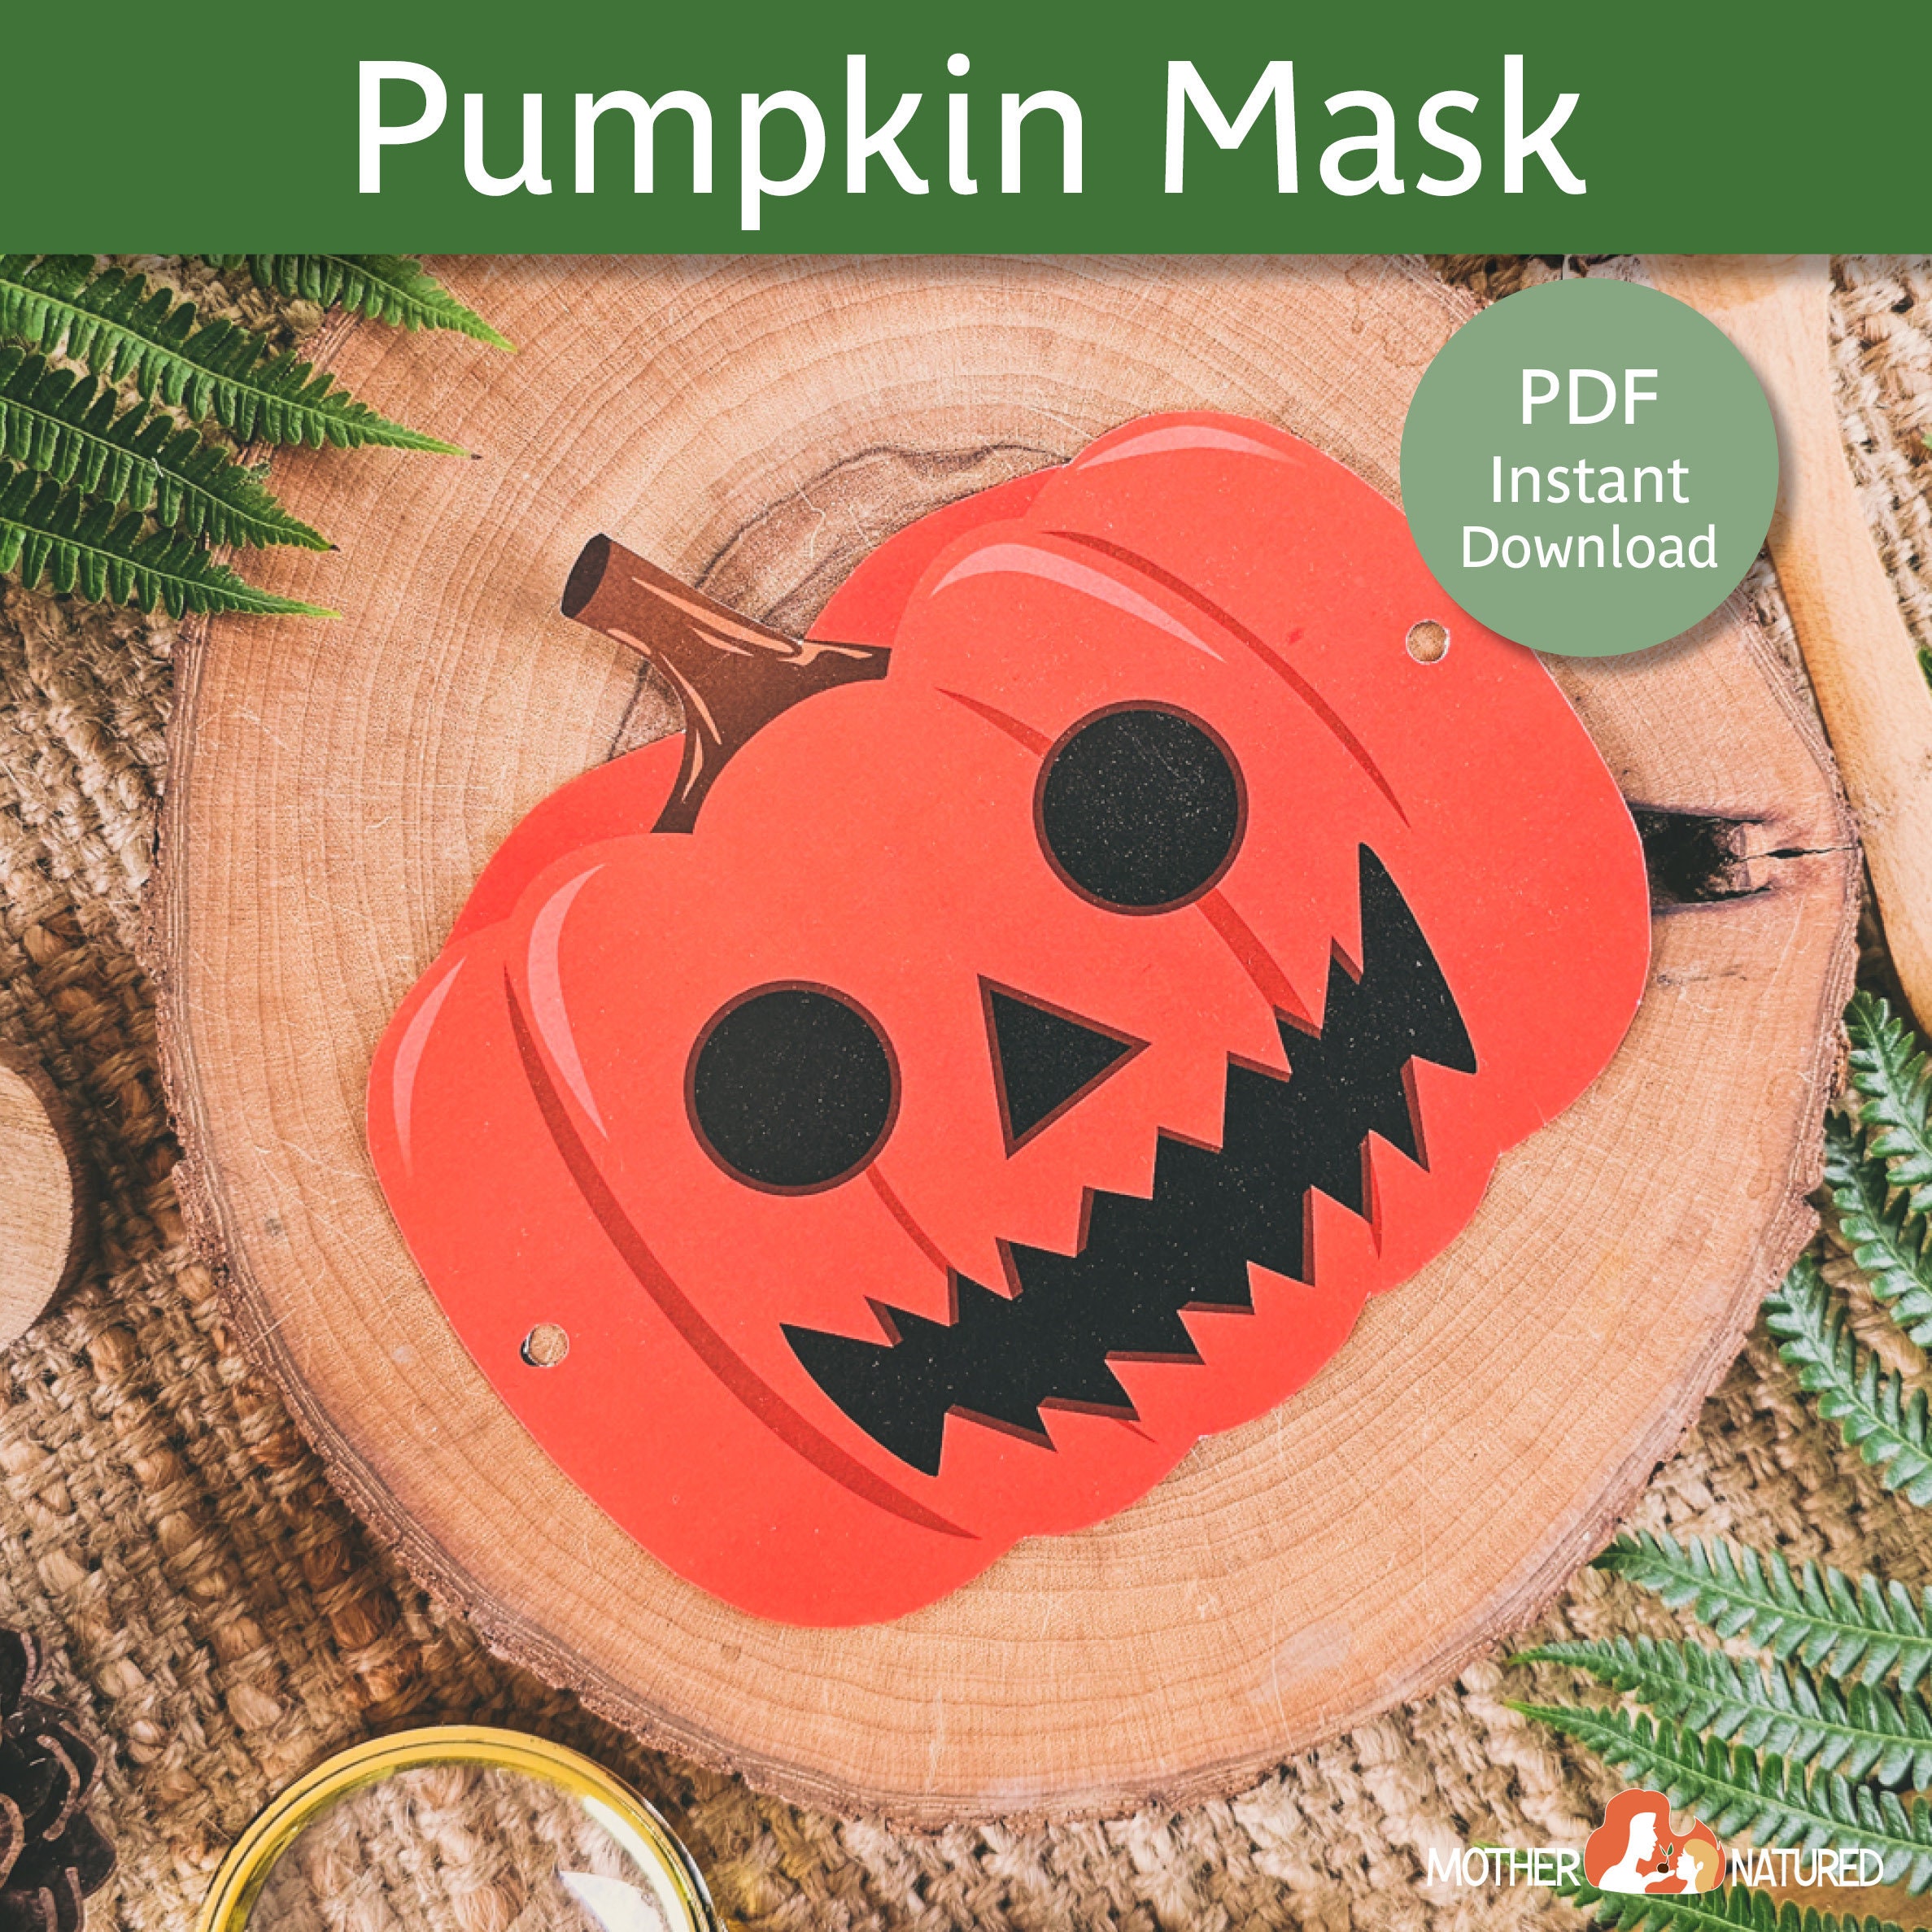 Pumpkin Mask Printable Pumpkin Mask Halloween Pumpkin Mask Scary